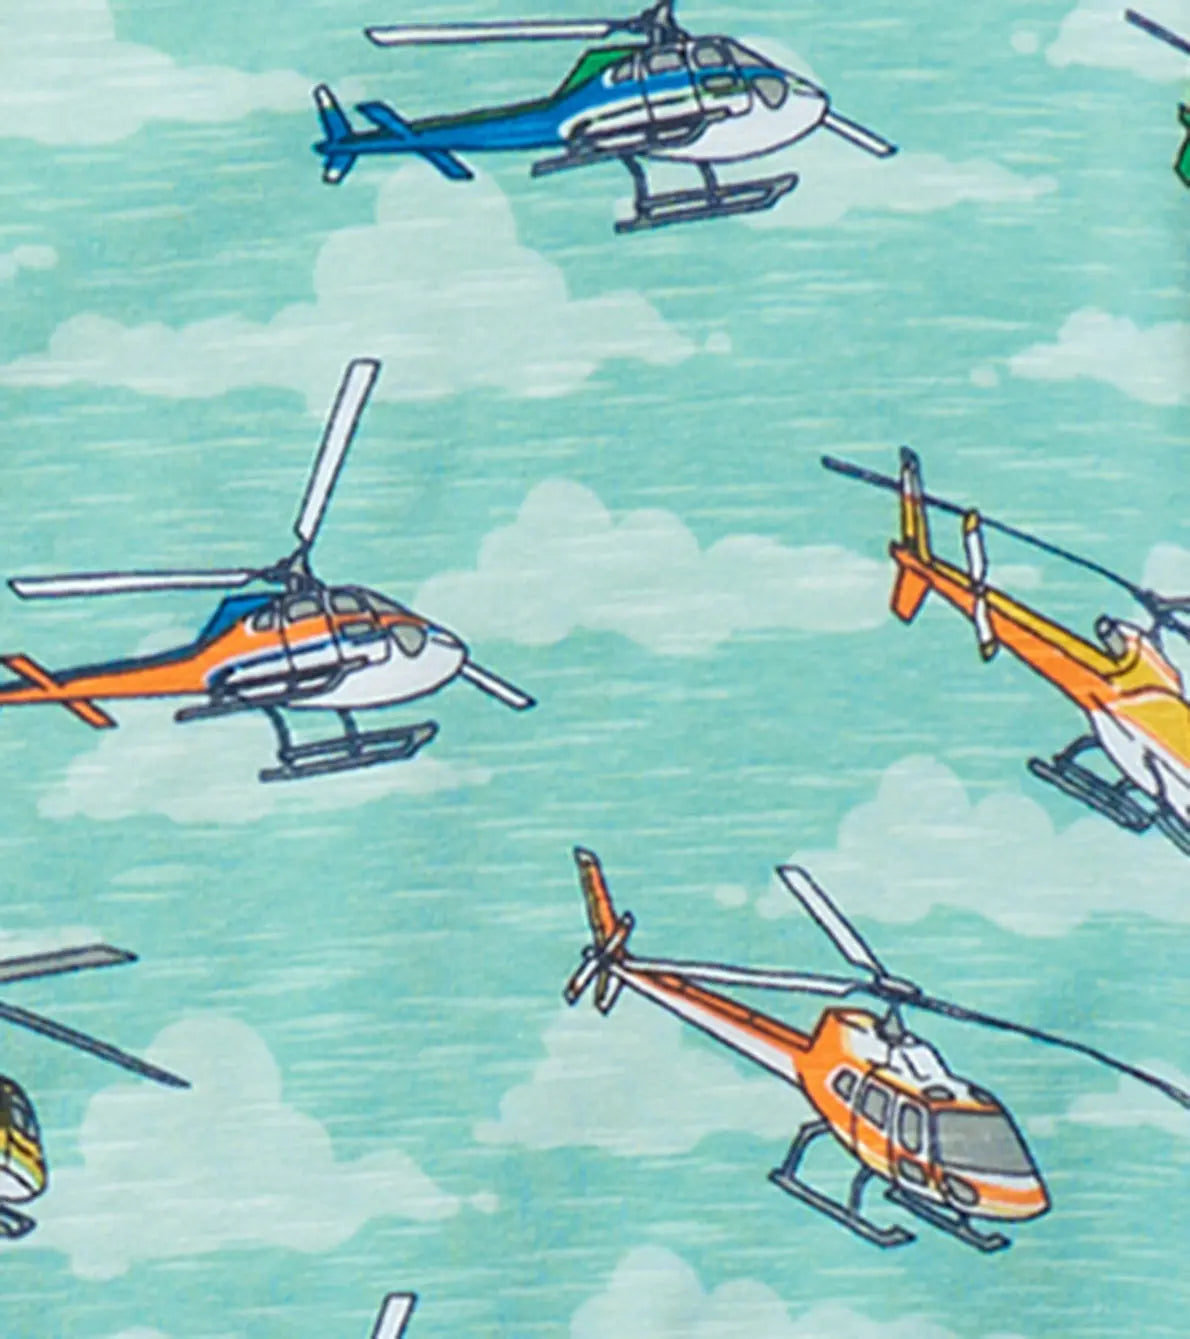 Boys Helicopters Pajama Set | Hatley | Hatley | Jenni Kidz